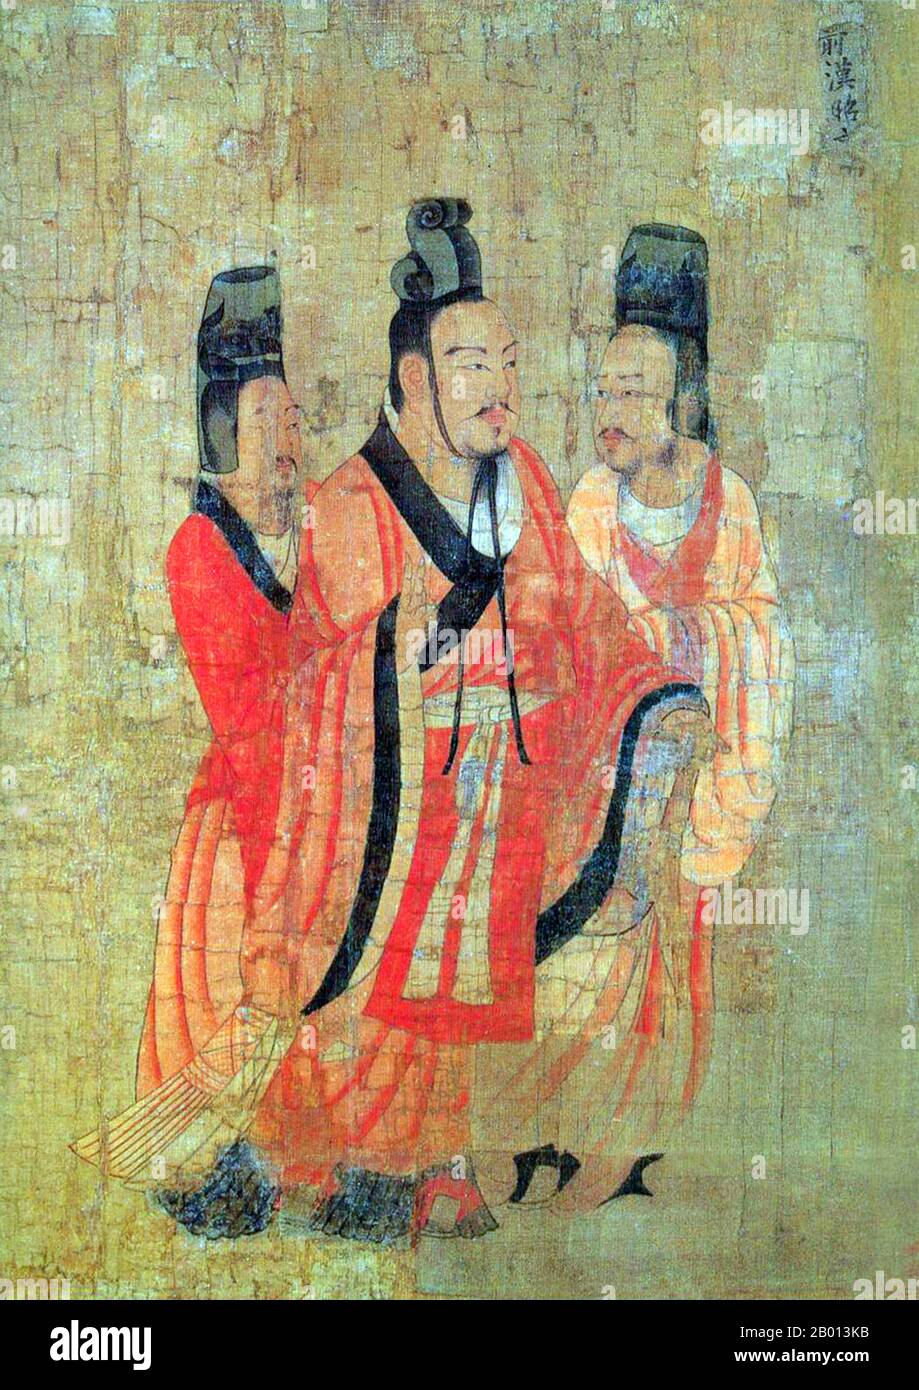 Cina: Imperatore Zhao di Han (94-74 a.C.). Pittura di Handscroll dal 'Thirteen imperors Scroll' di Yan Liben, pittore di corte della dinastia Tang (600-673), VII secolo. L'imperatore Zhao di Han fu imperatore della dinastia Han cinese dal 87 a.C. al 74 a.C.. L'imperatore Zhao era il figlio più giovane dell'imperatore Wu di Han. Al momento della nascita di Zhao, l'imperatore Wu aveva già 62 anni. Zhao salì sul trono solo 8 anni, e Huo Guang servì come reggente. L'imperatore Zhao, sotto la tutela di Huo, prese l'iniziativa e abbassò le tasse e ridusse la spesa pubblica. I cittadini prosperarono e la dinastia Han godette di pace. Foto Stock